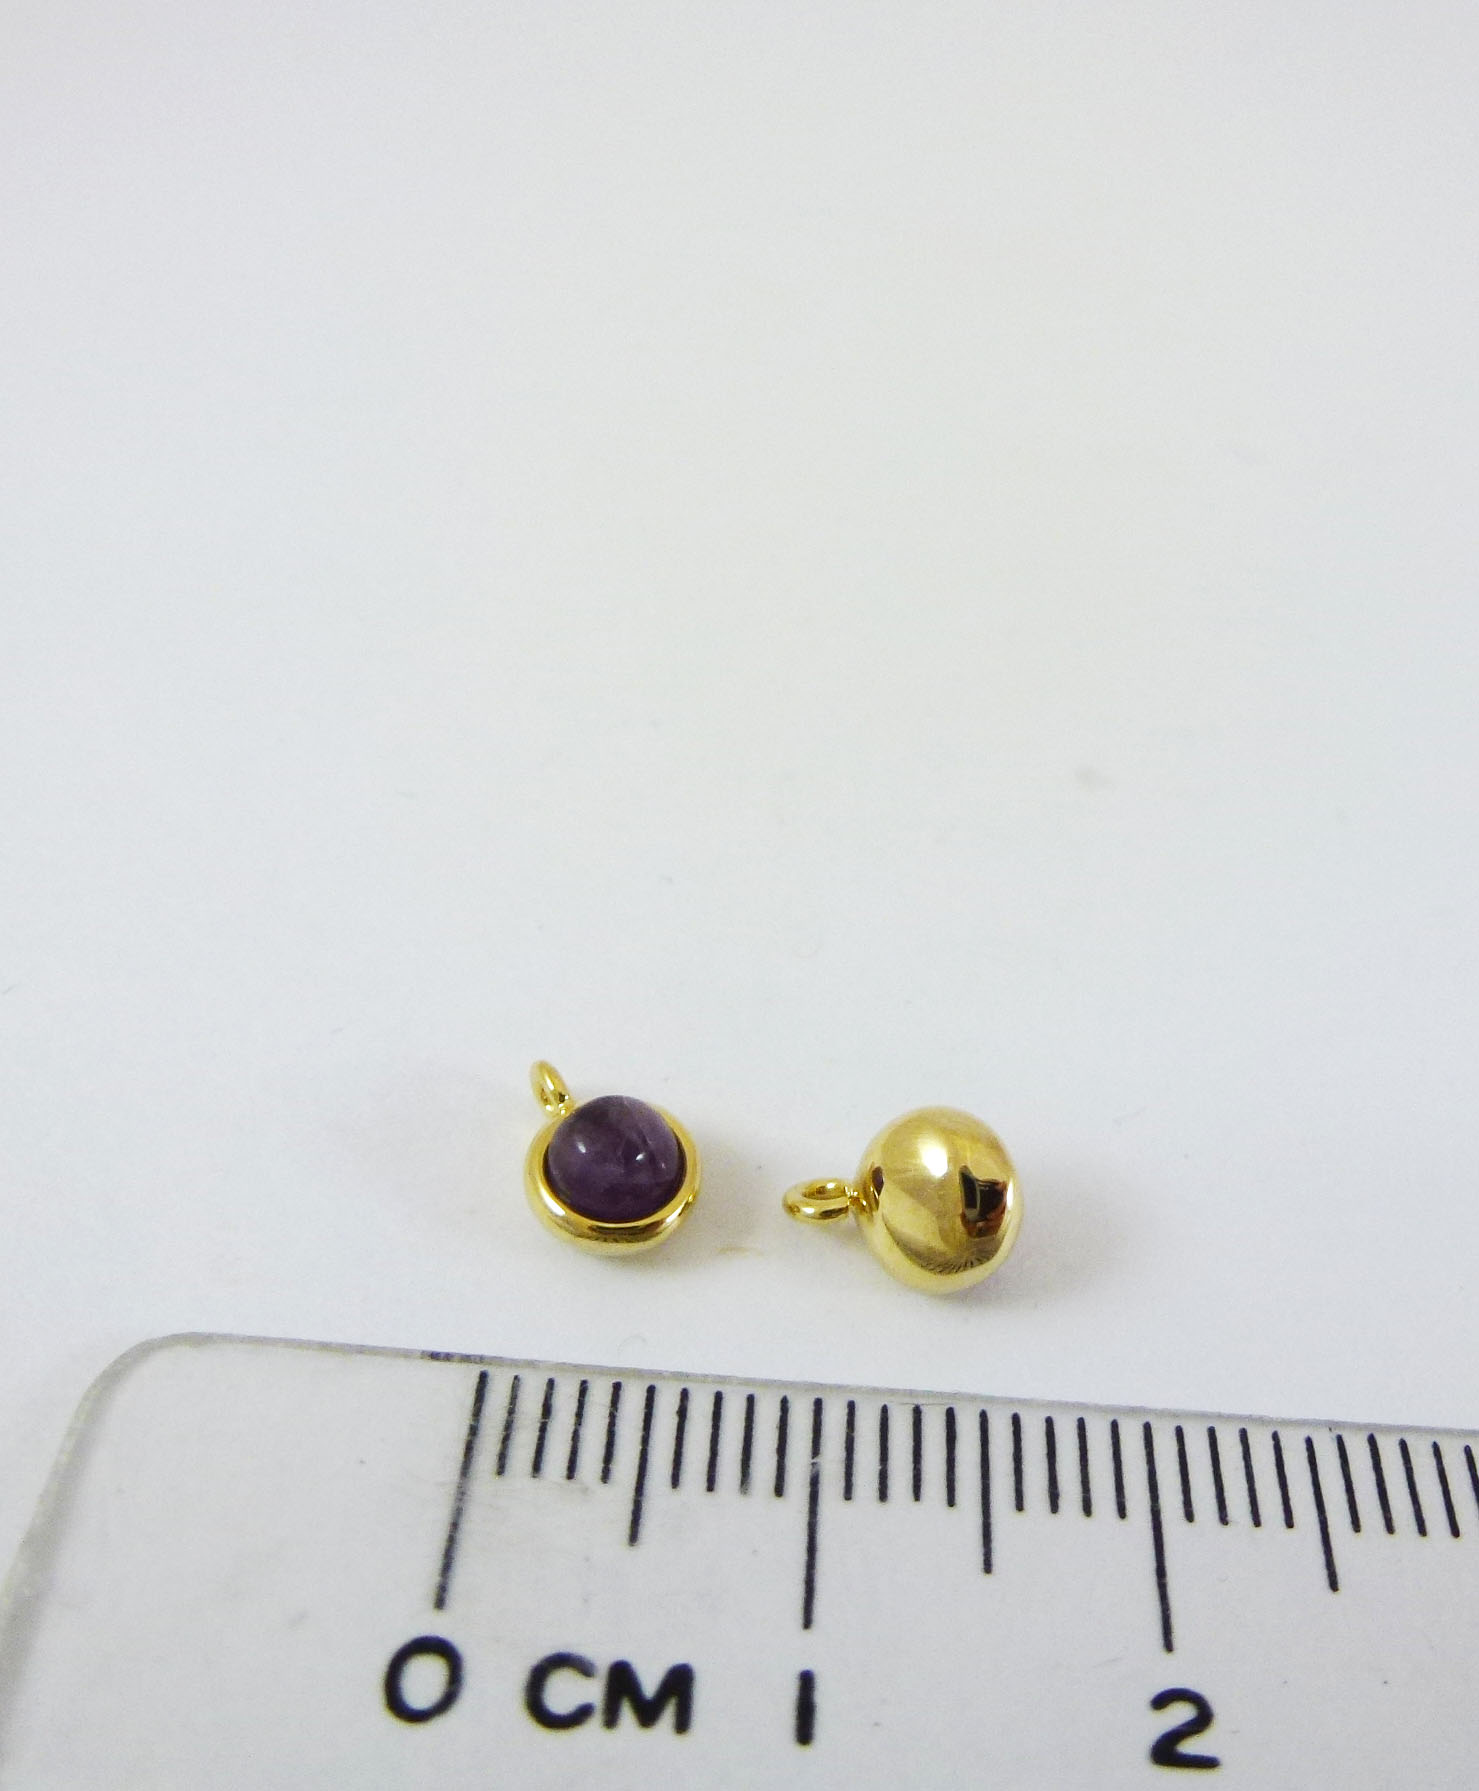 銅鍍金色單孔誕生石-二月紫水晶